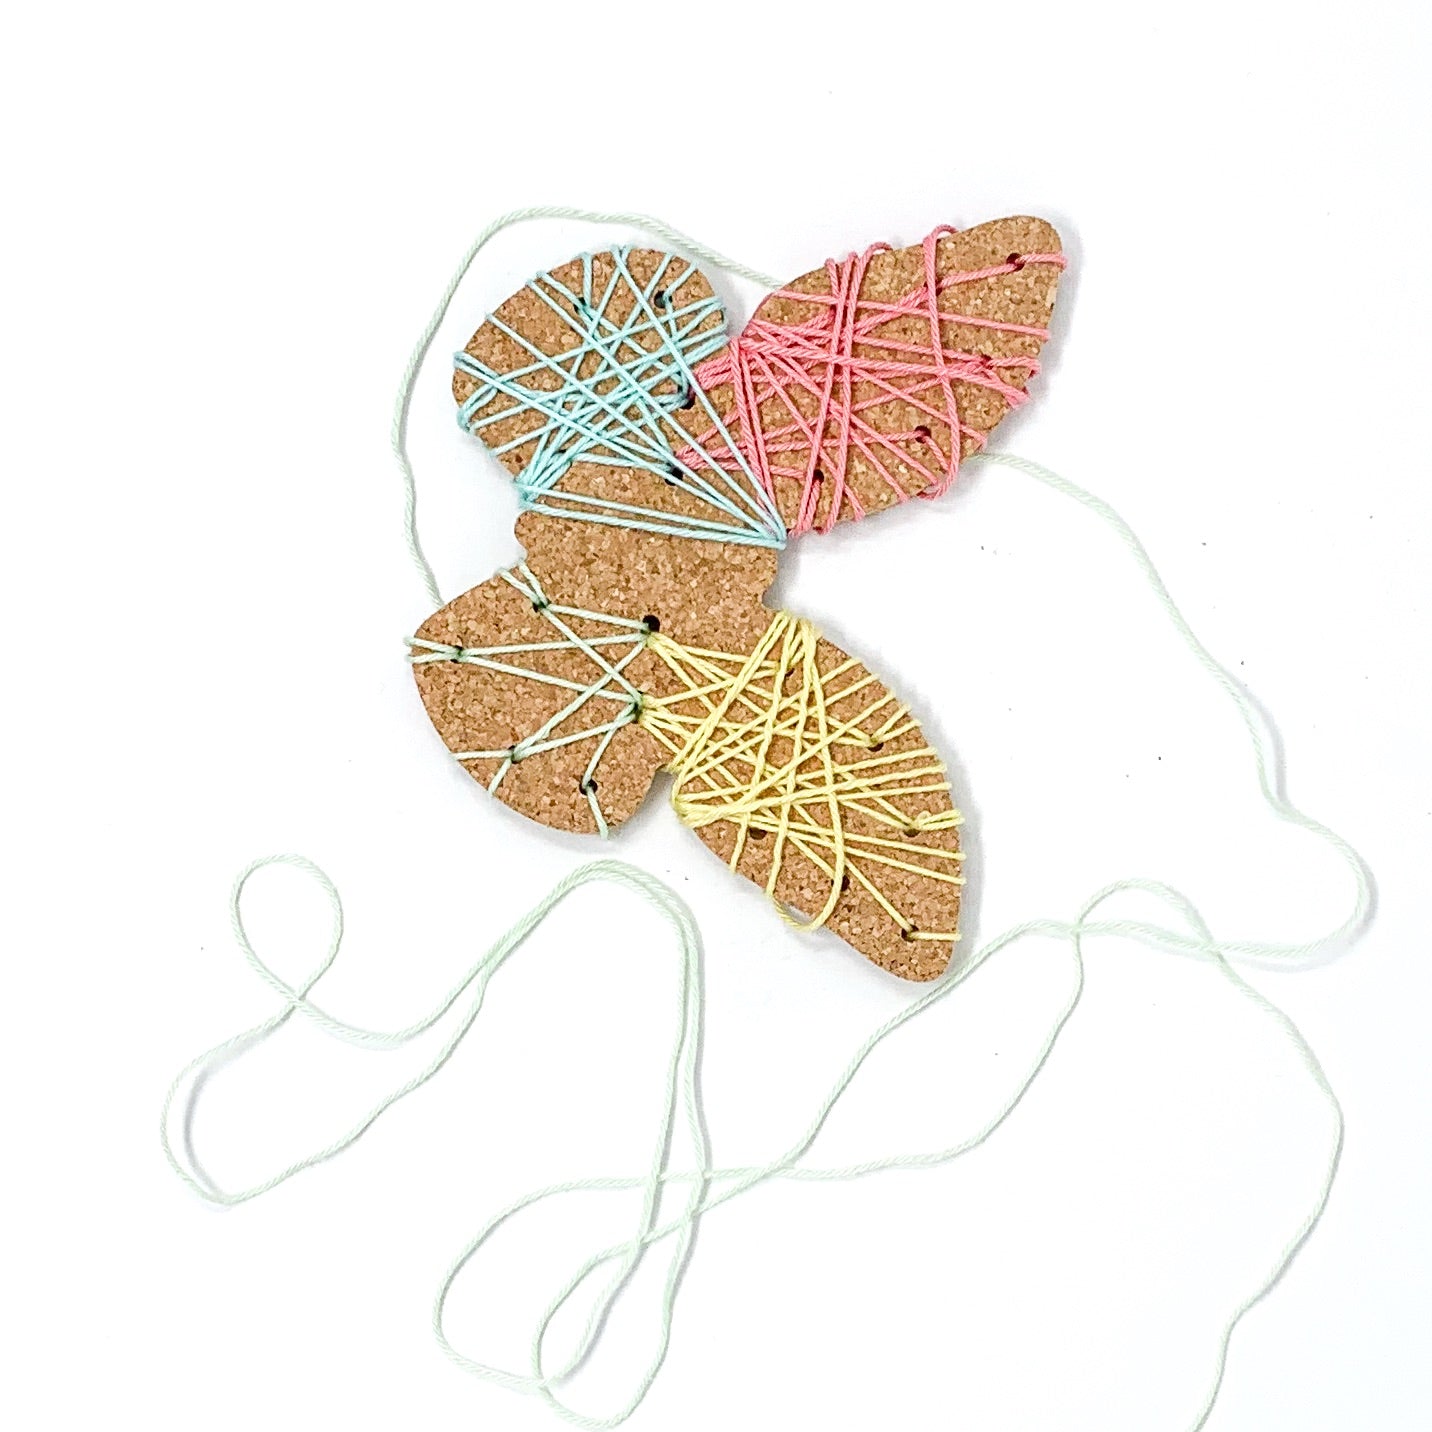 Kit de bricolage - Papillon, Mouton - Kit de bricolage pour enfants tissage, dessin, découpe 6-8 ans.